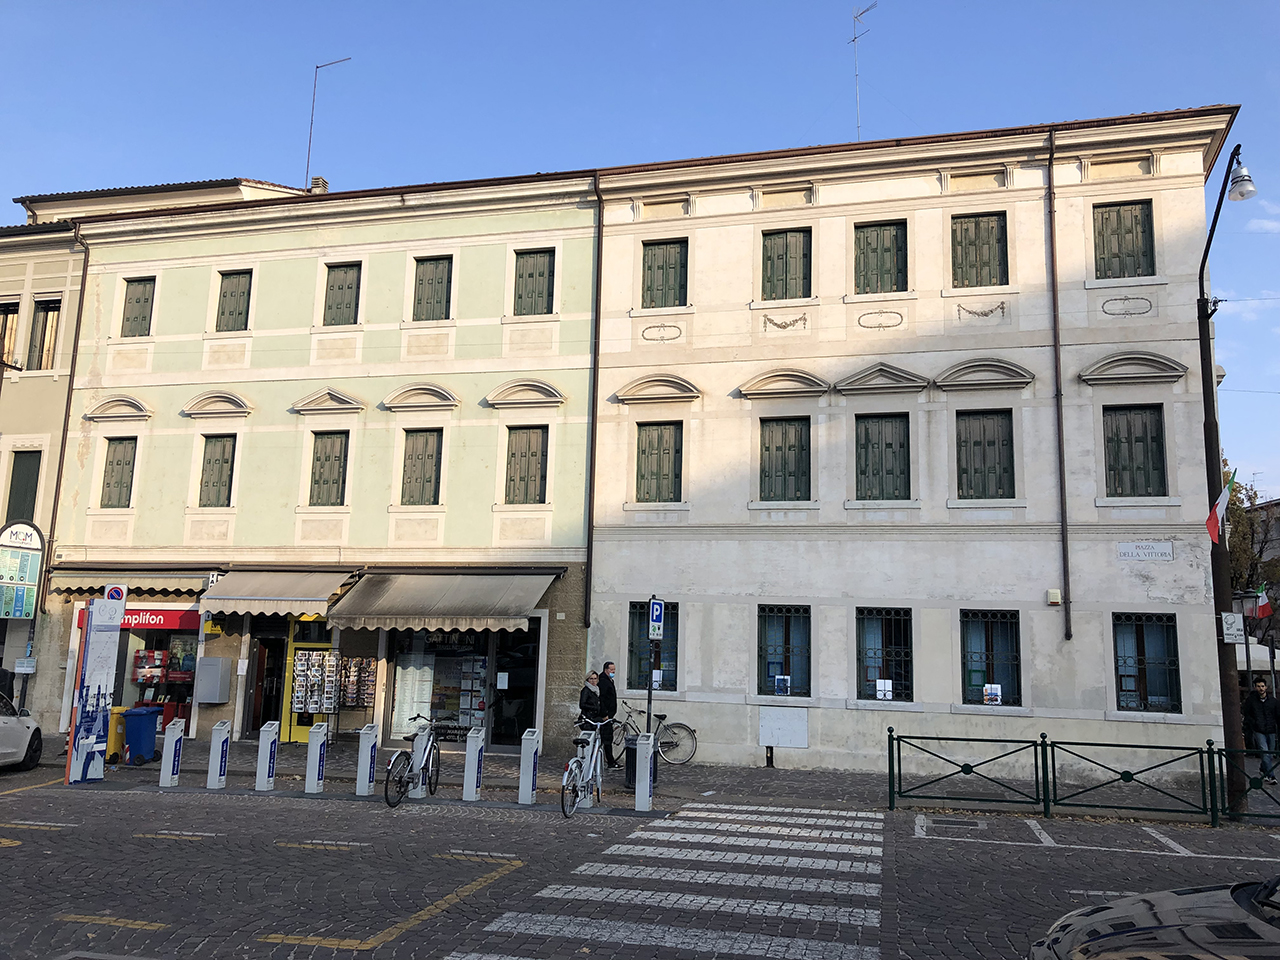 Palazzetto del XVIII secolo (palazzo) - Treviso (TV)  (XVIII, fine)